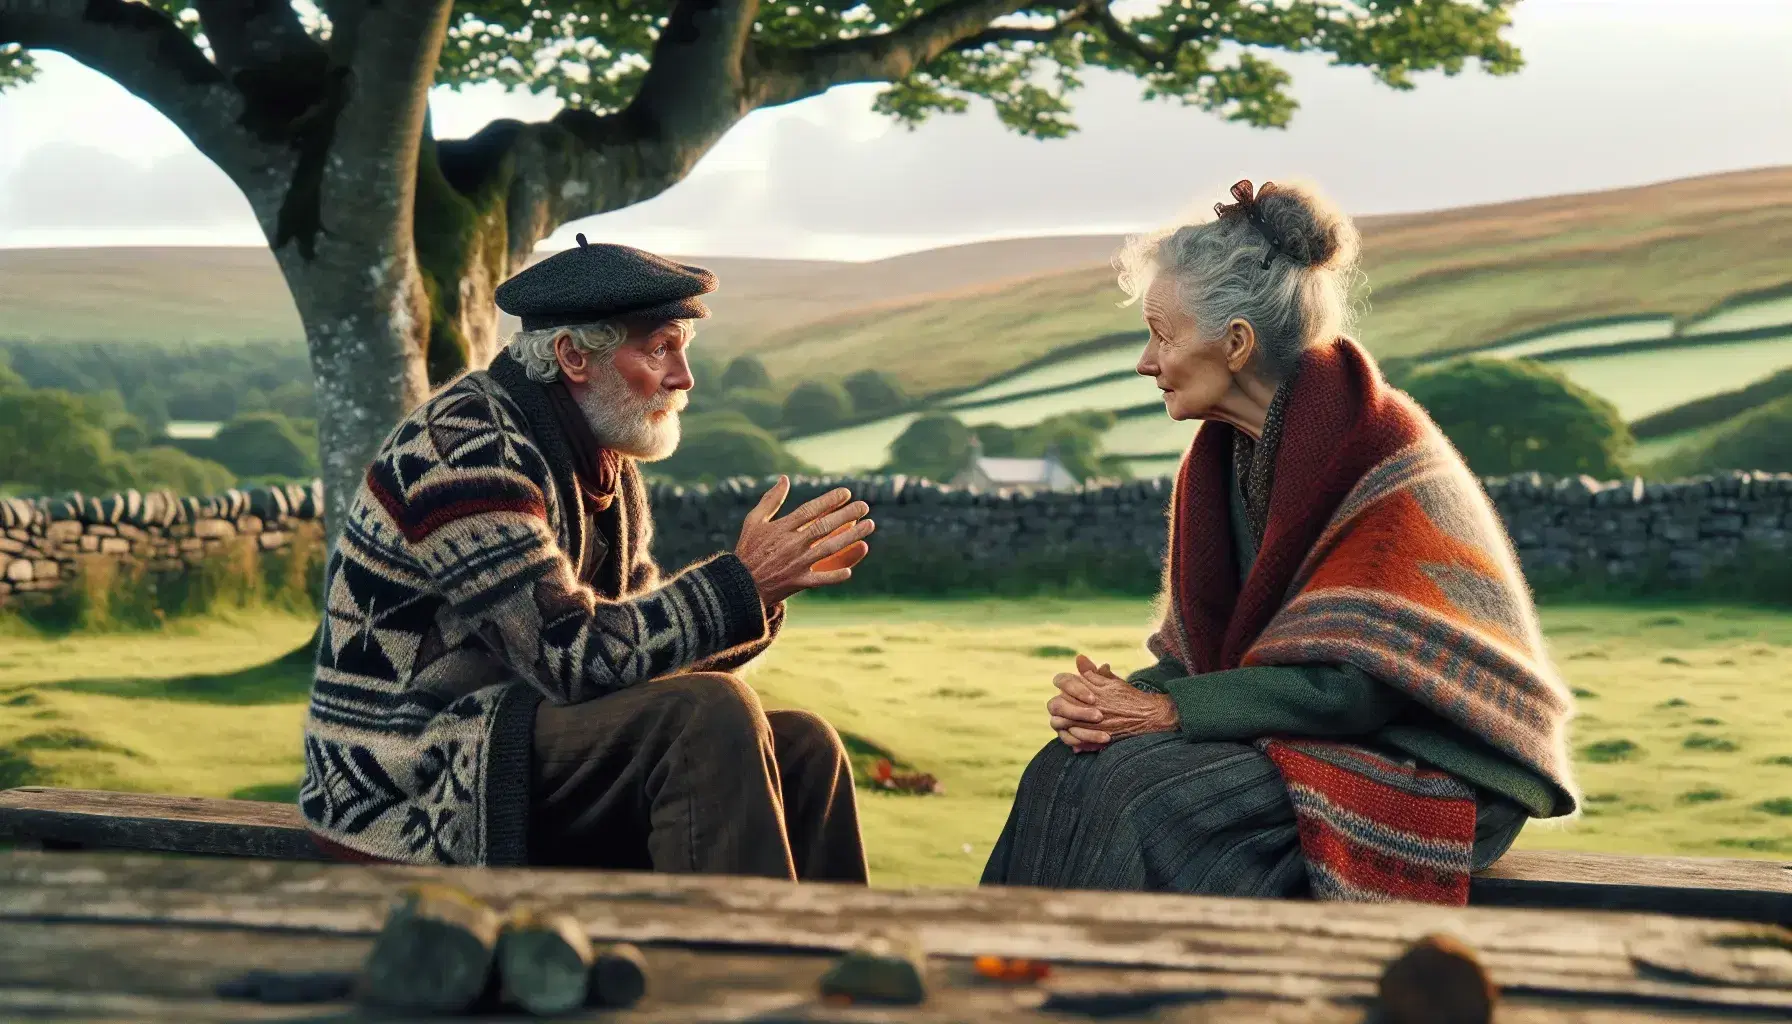 Dos personas mayores conversando animadamente en un banco de madera al aire libre, con un hombre vestido con boina y chaqueta de lana y una mujer con chal tejido, en un paisaje rural tranquilo.